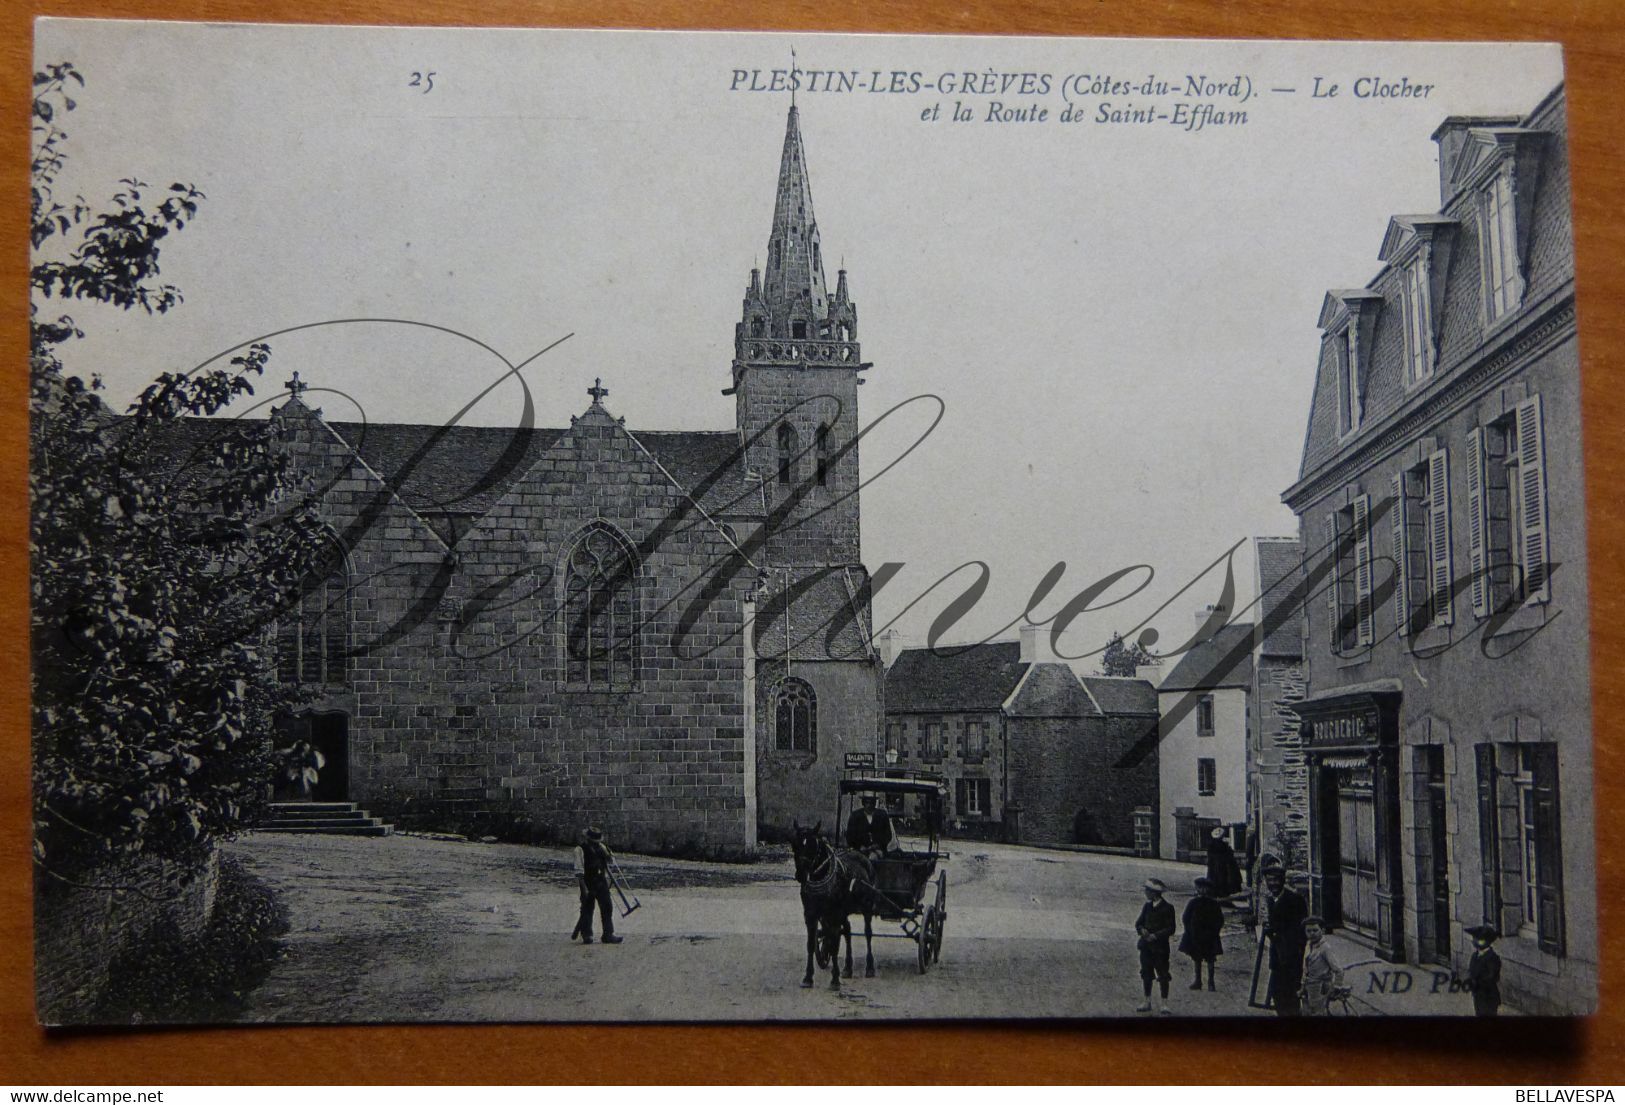 Plestin-les-Greves.  Eglise. Route Saint-Efflam. N°25 - Plestin-les-Greves